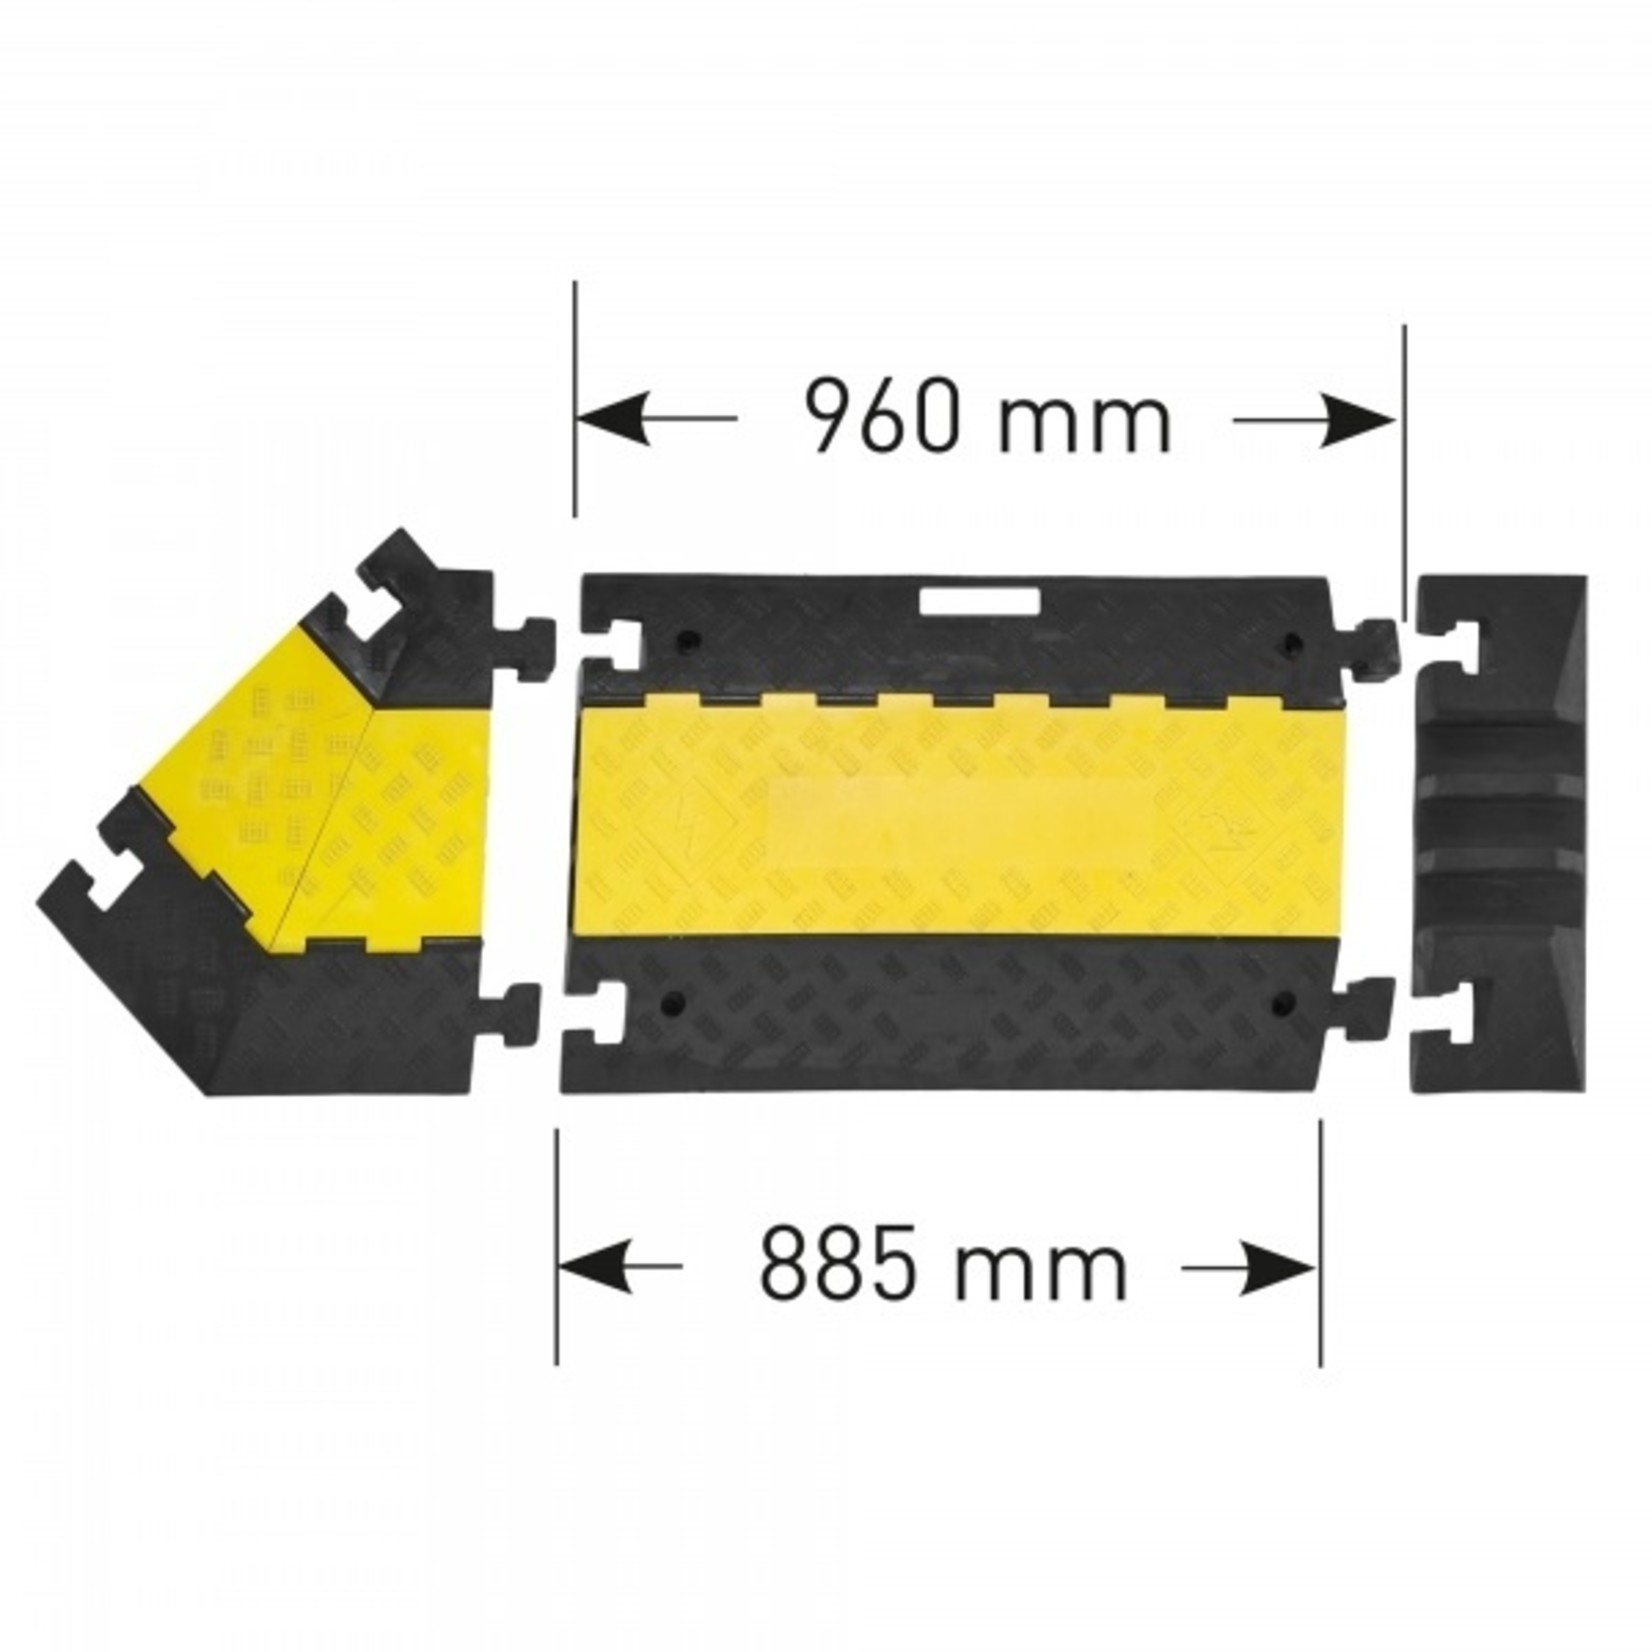 MORION grote kabelbeschermer - rechtse hoek 45° - zwart/geel